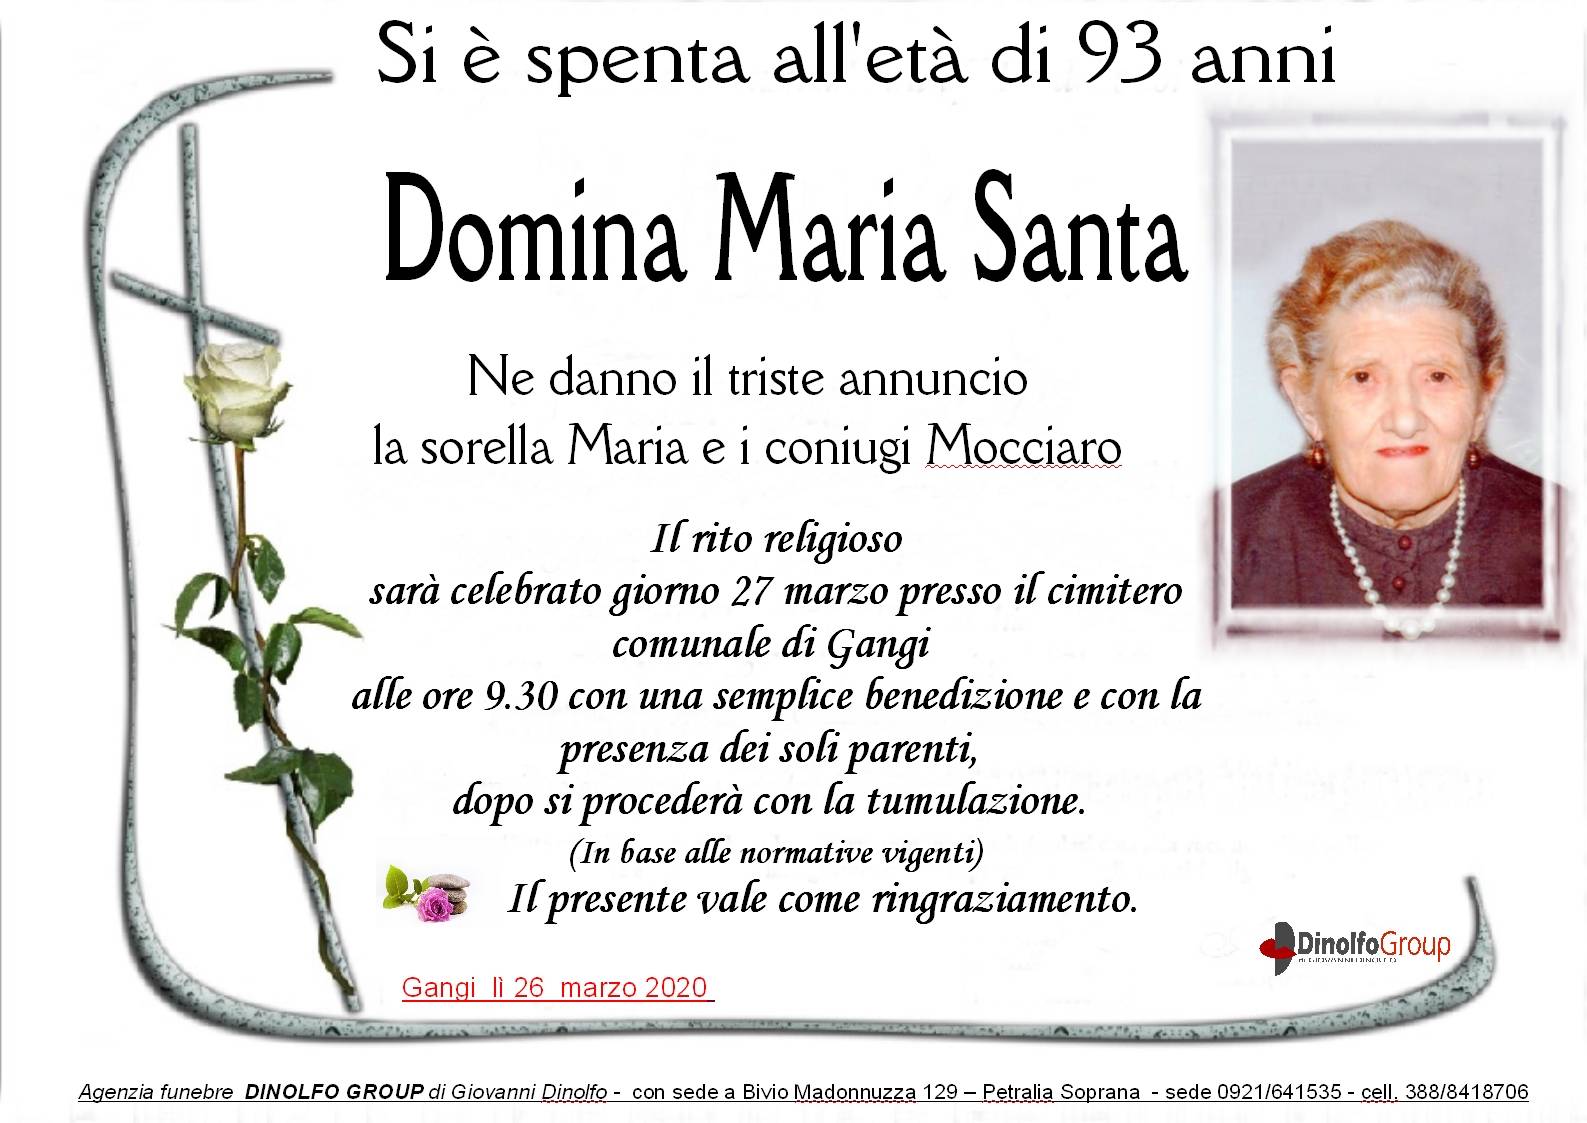 Maria Santa Domina